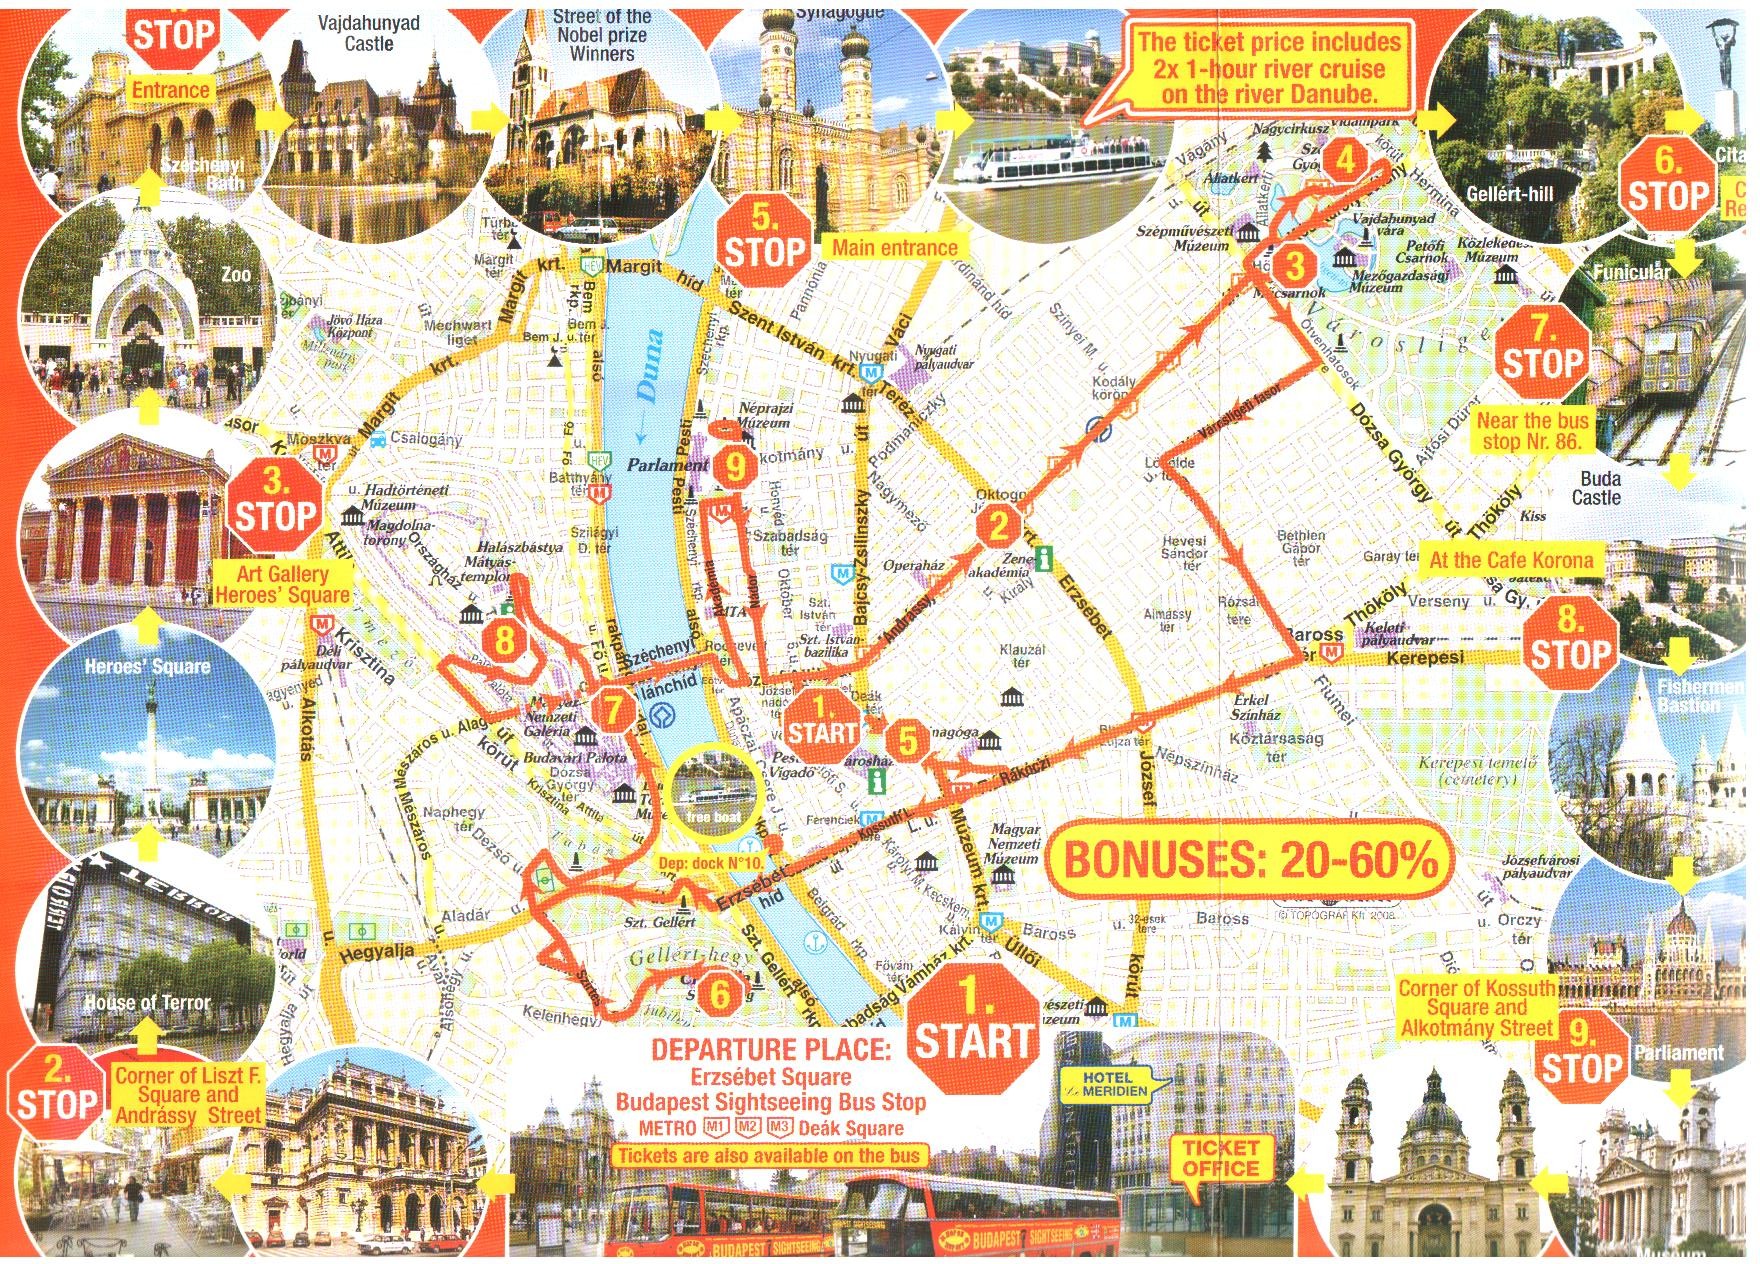 budapest nevezetességei térkép Magyarország idegenforgalmi régiói budapest nevezetességei térkép